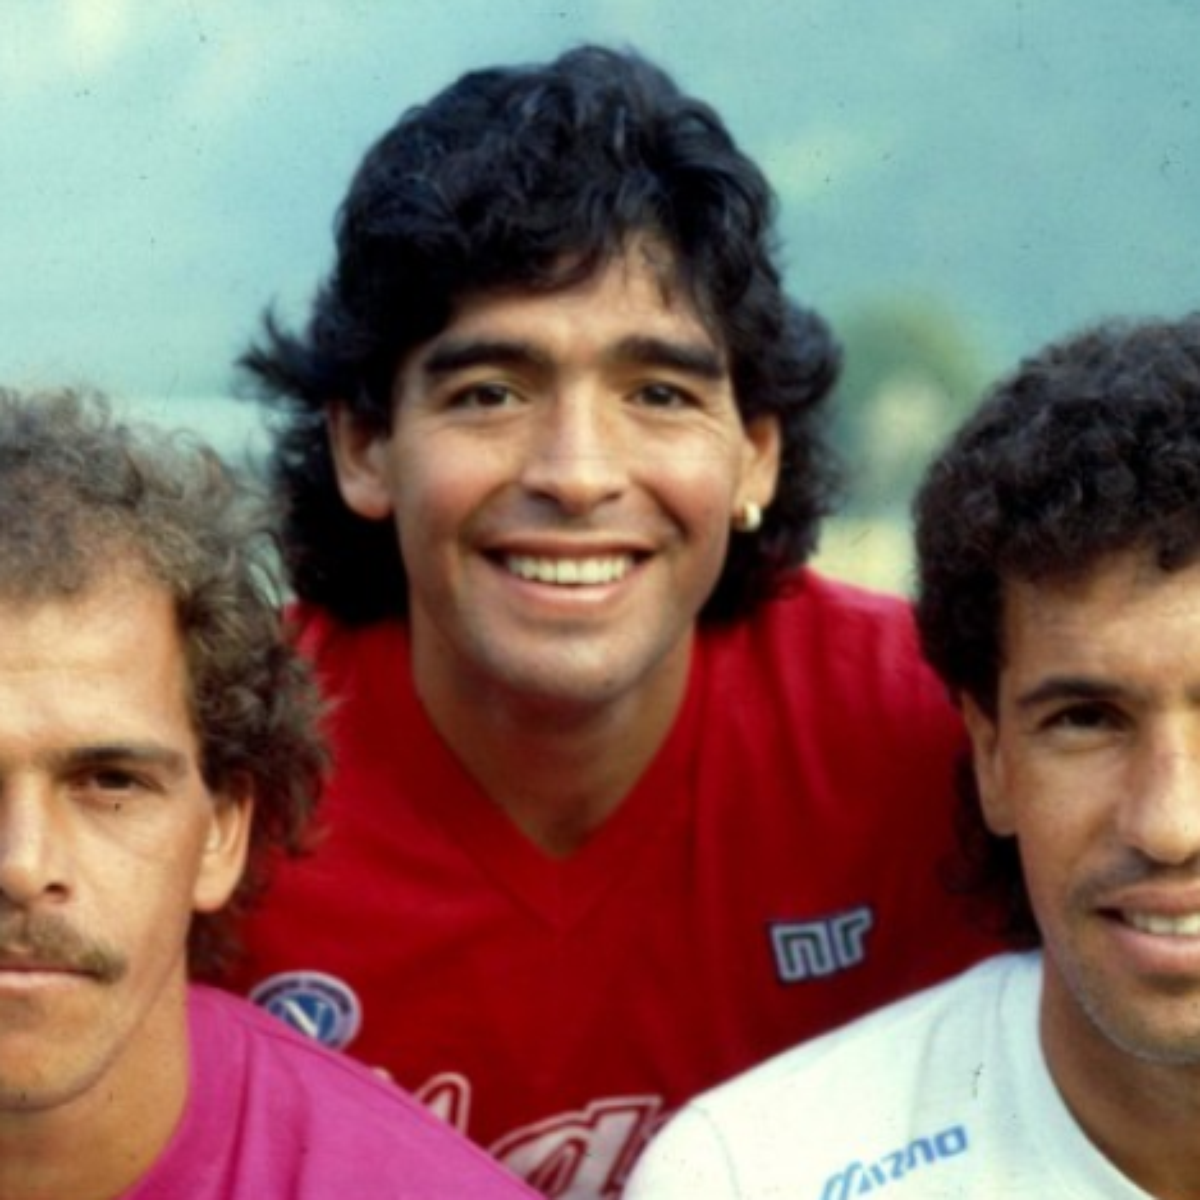 Careca fala de parceria com Maradona e compara ataque do Napoli ao trio MSN